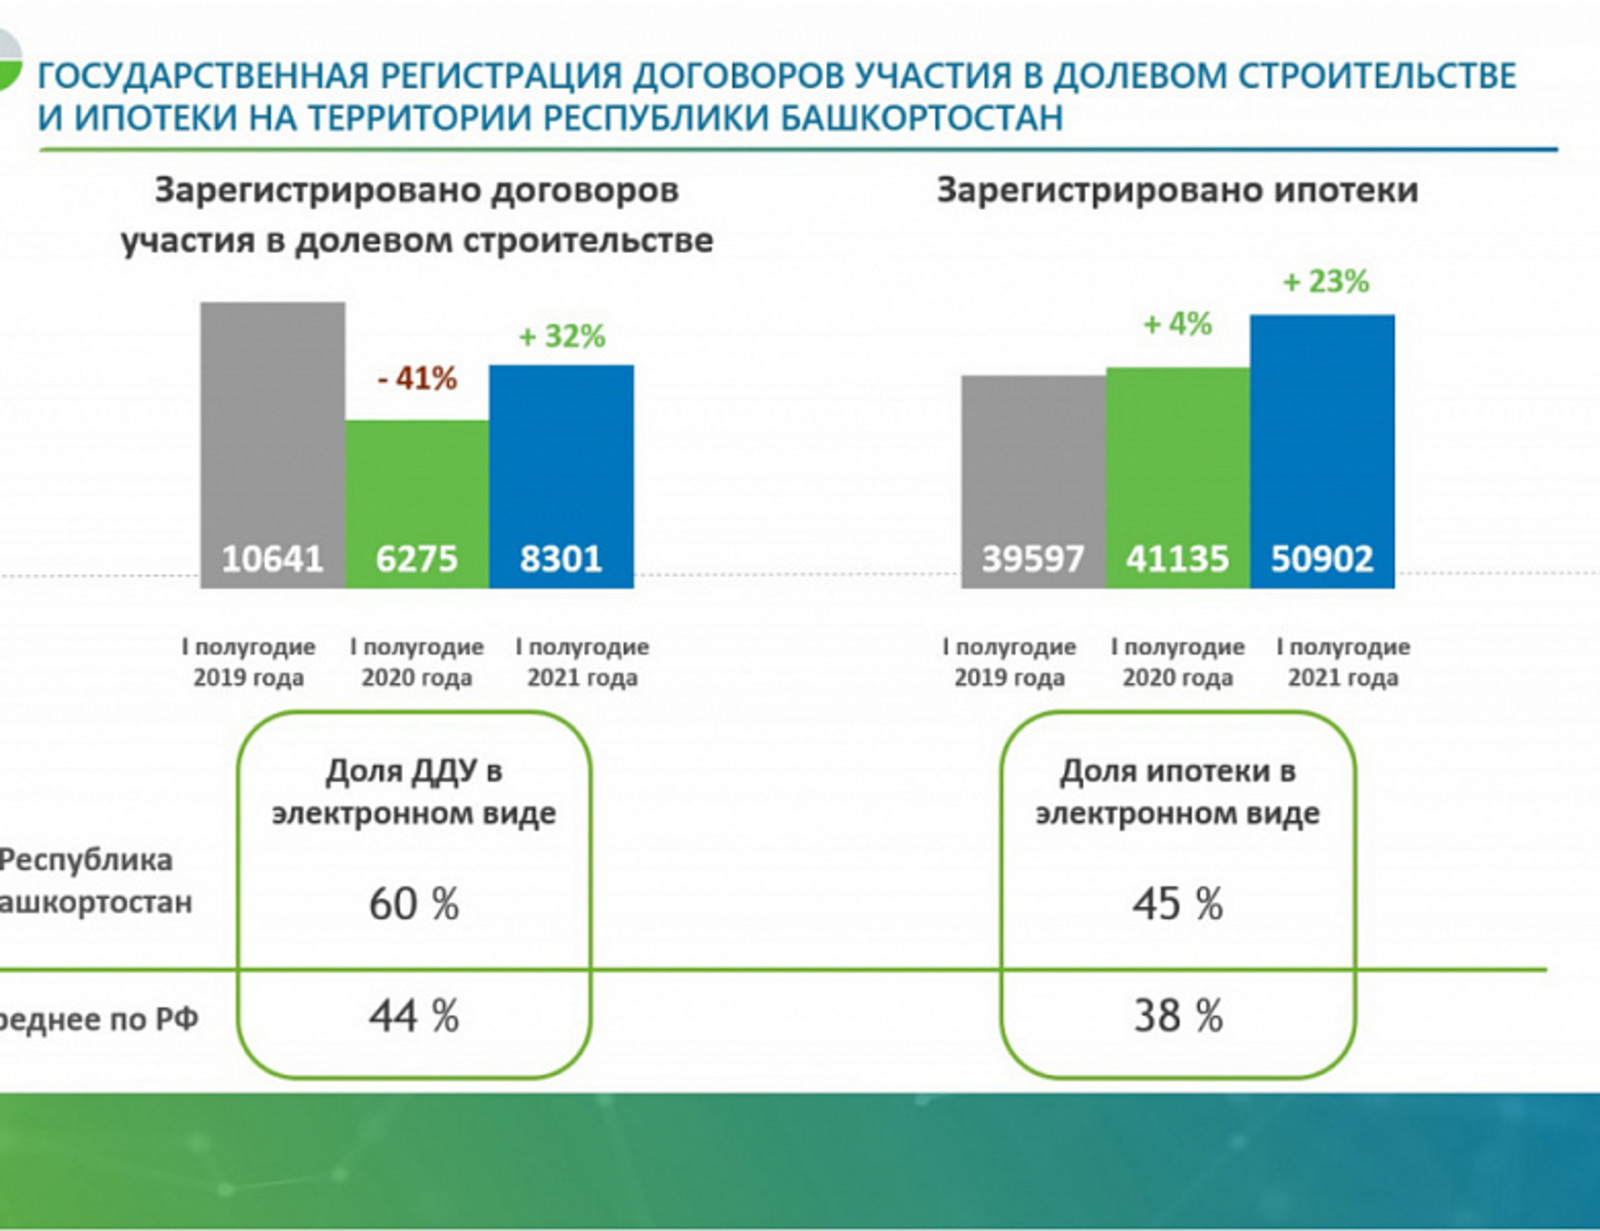 В Башкортостане 60% заявлений о покупке жилья в новостройках подаются в электронном виде